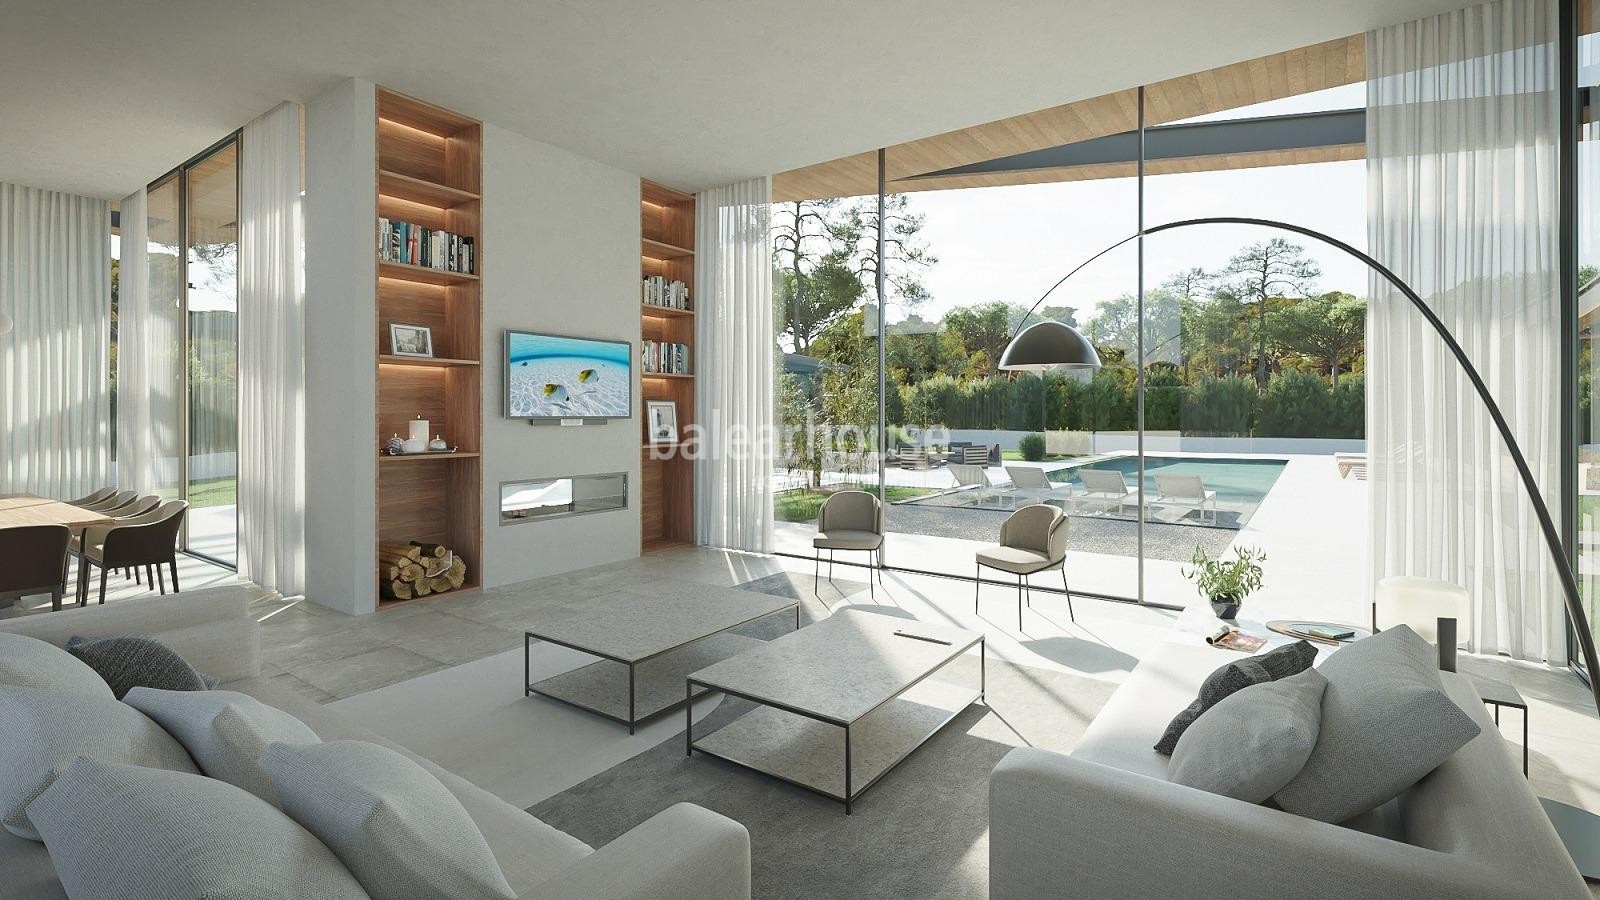 Gran villa moderna de obra nueva con jardín y piscina cerca del golf y mar en Santa Ponsa